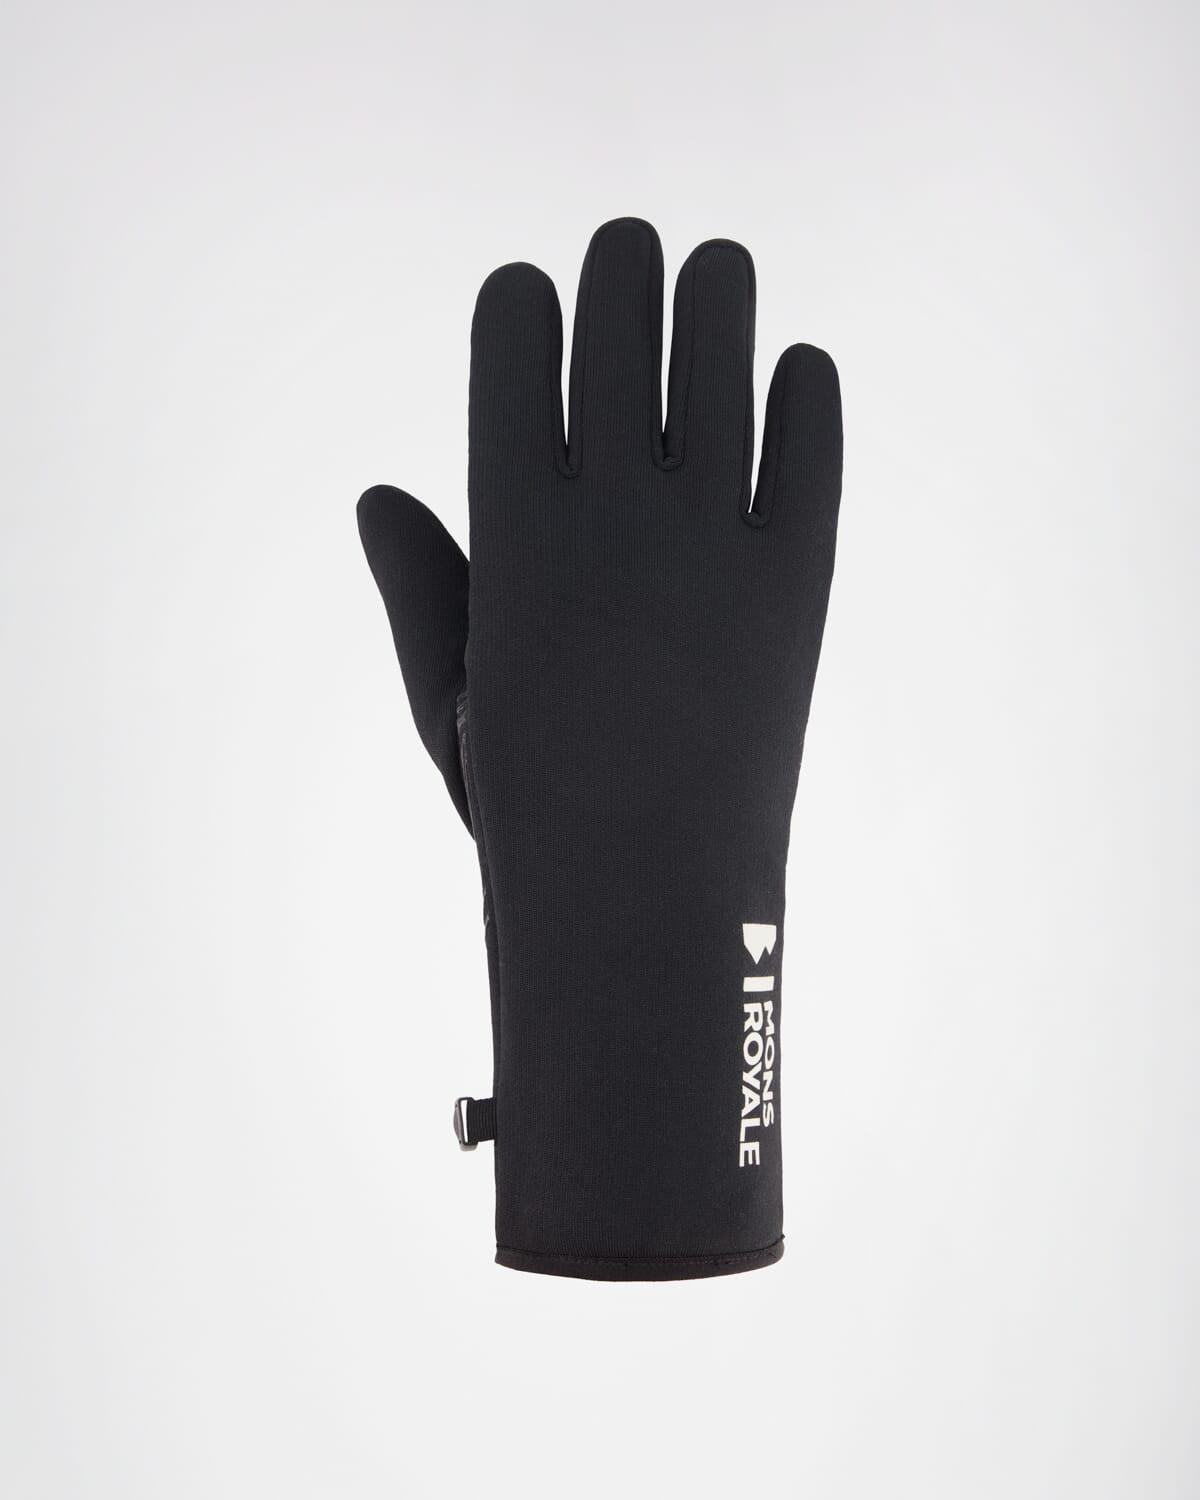 Amp Merino Fleece Gloves - Black